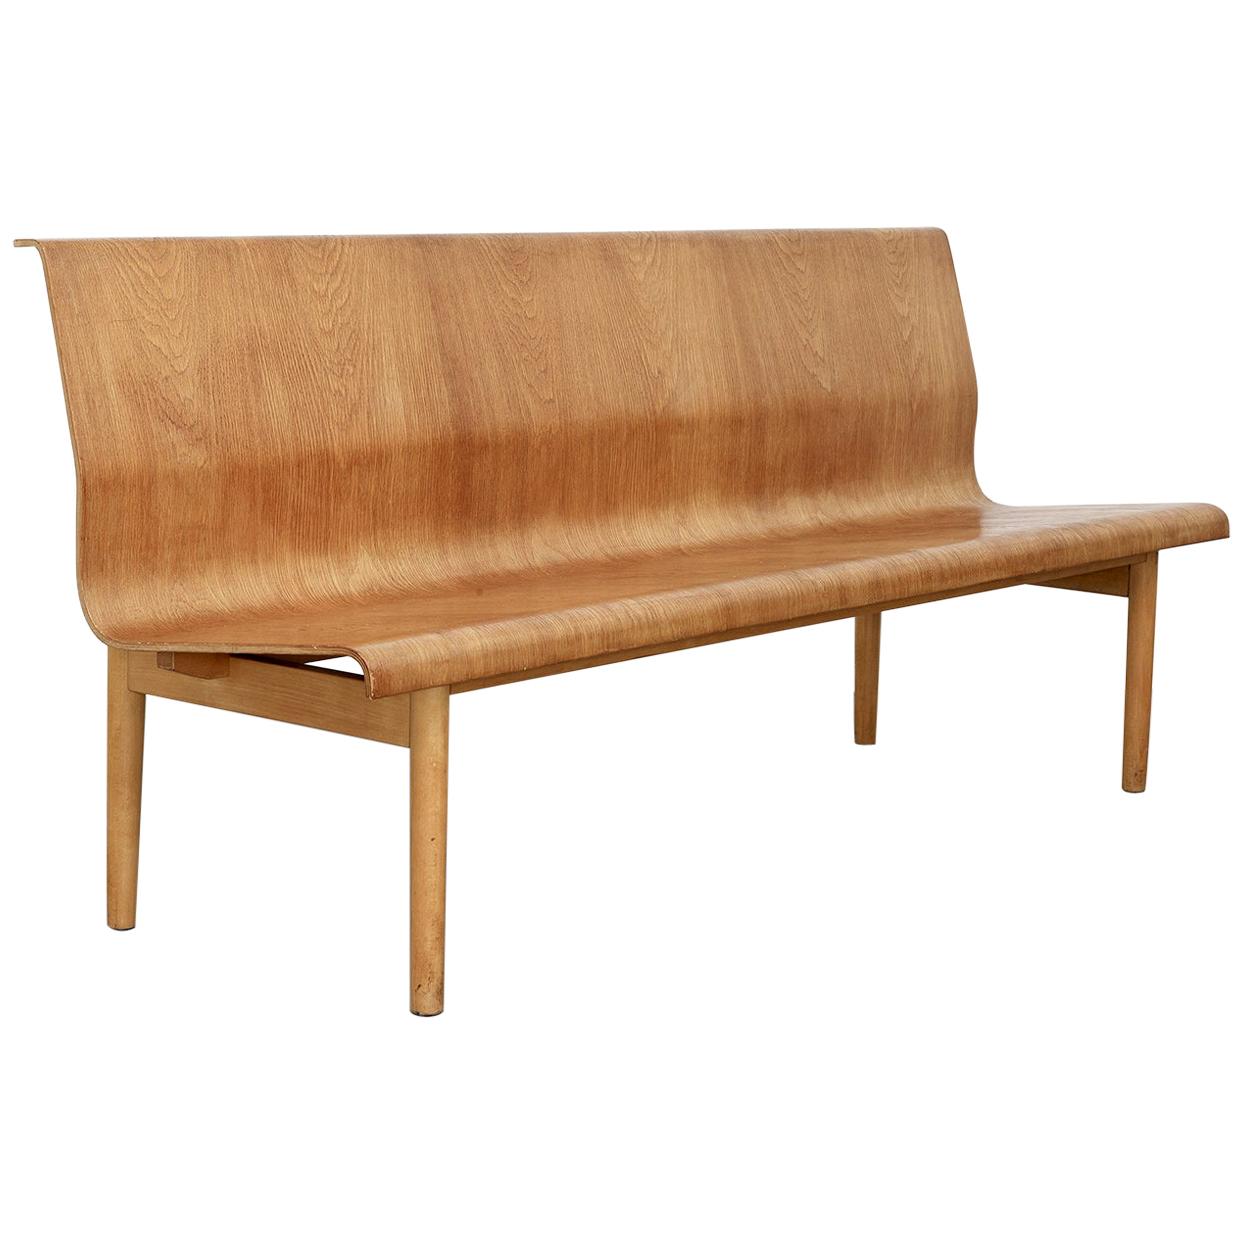 Mid-Century Modern Scandinavian Plywood Bench in Style of Erik Gunnar Asplund